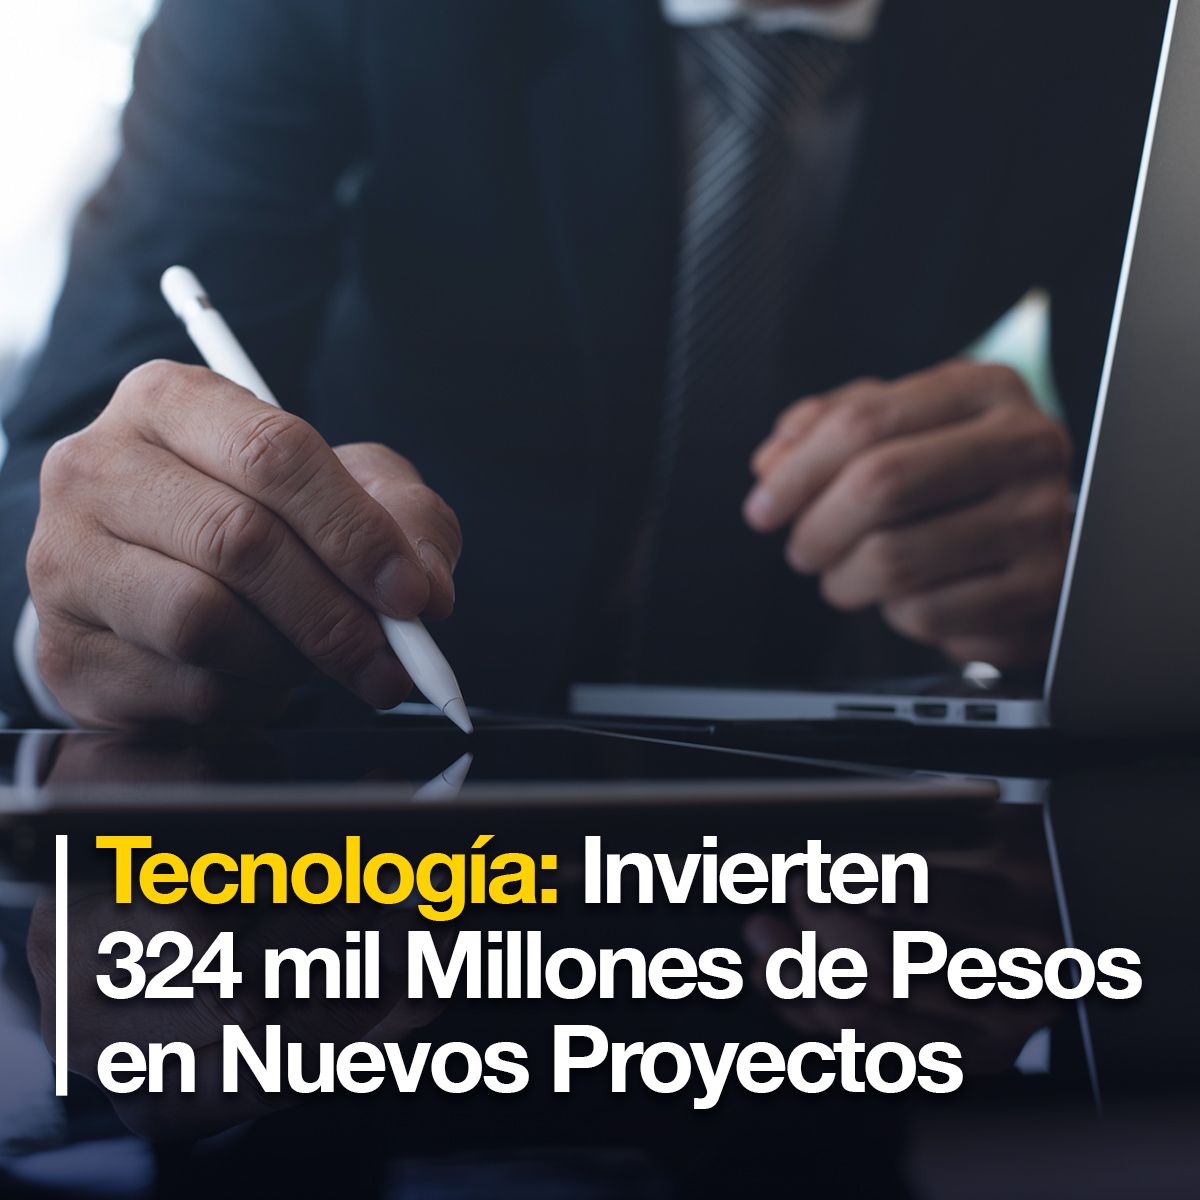 Tecnología: Invierten 324 mil Millones de Pesos en Nuevos Proyectos